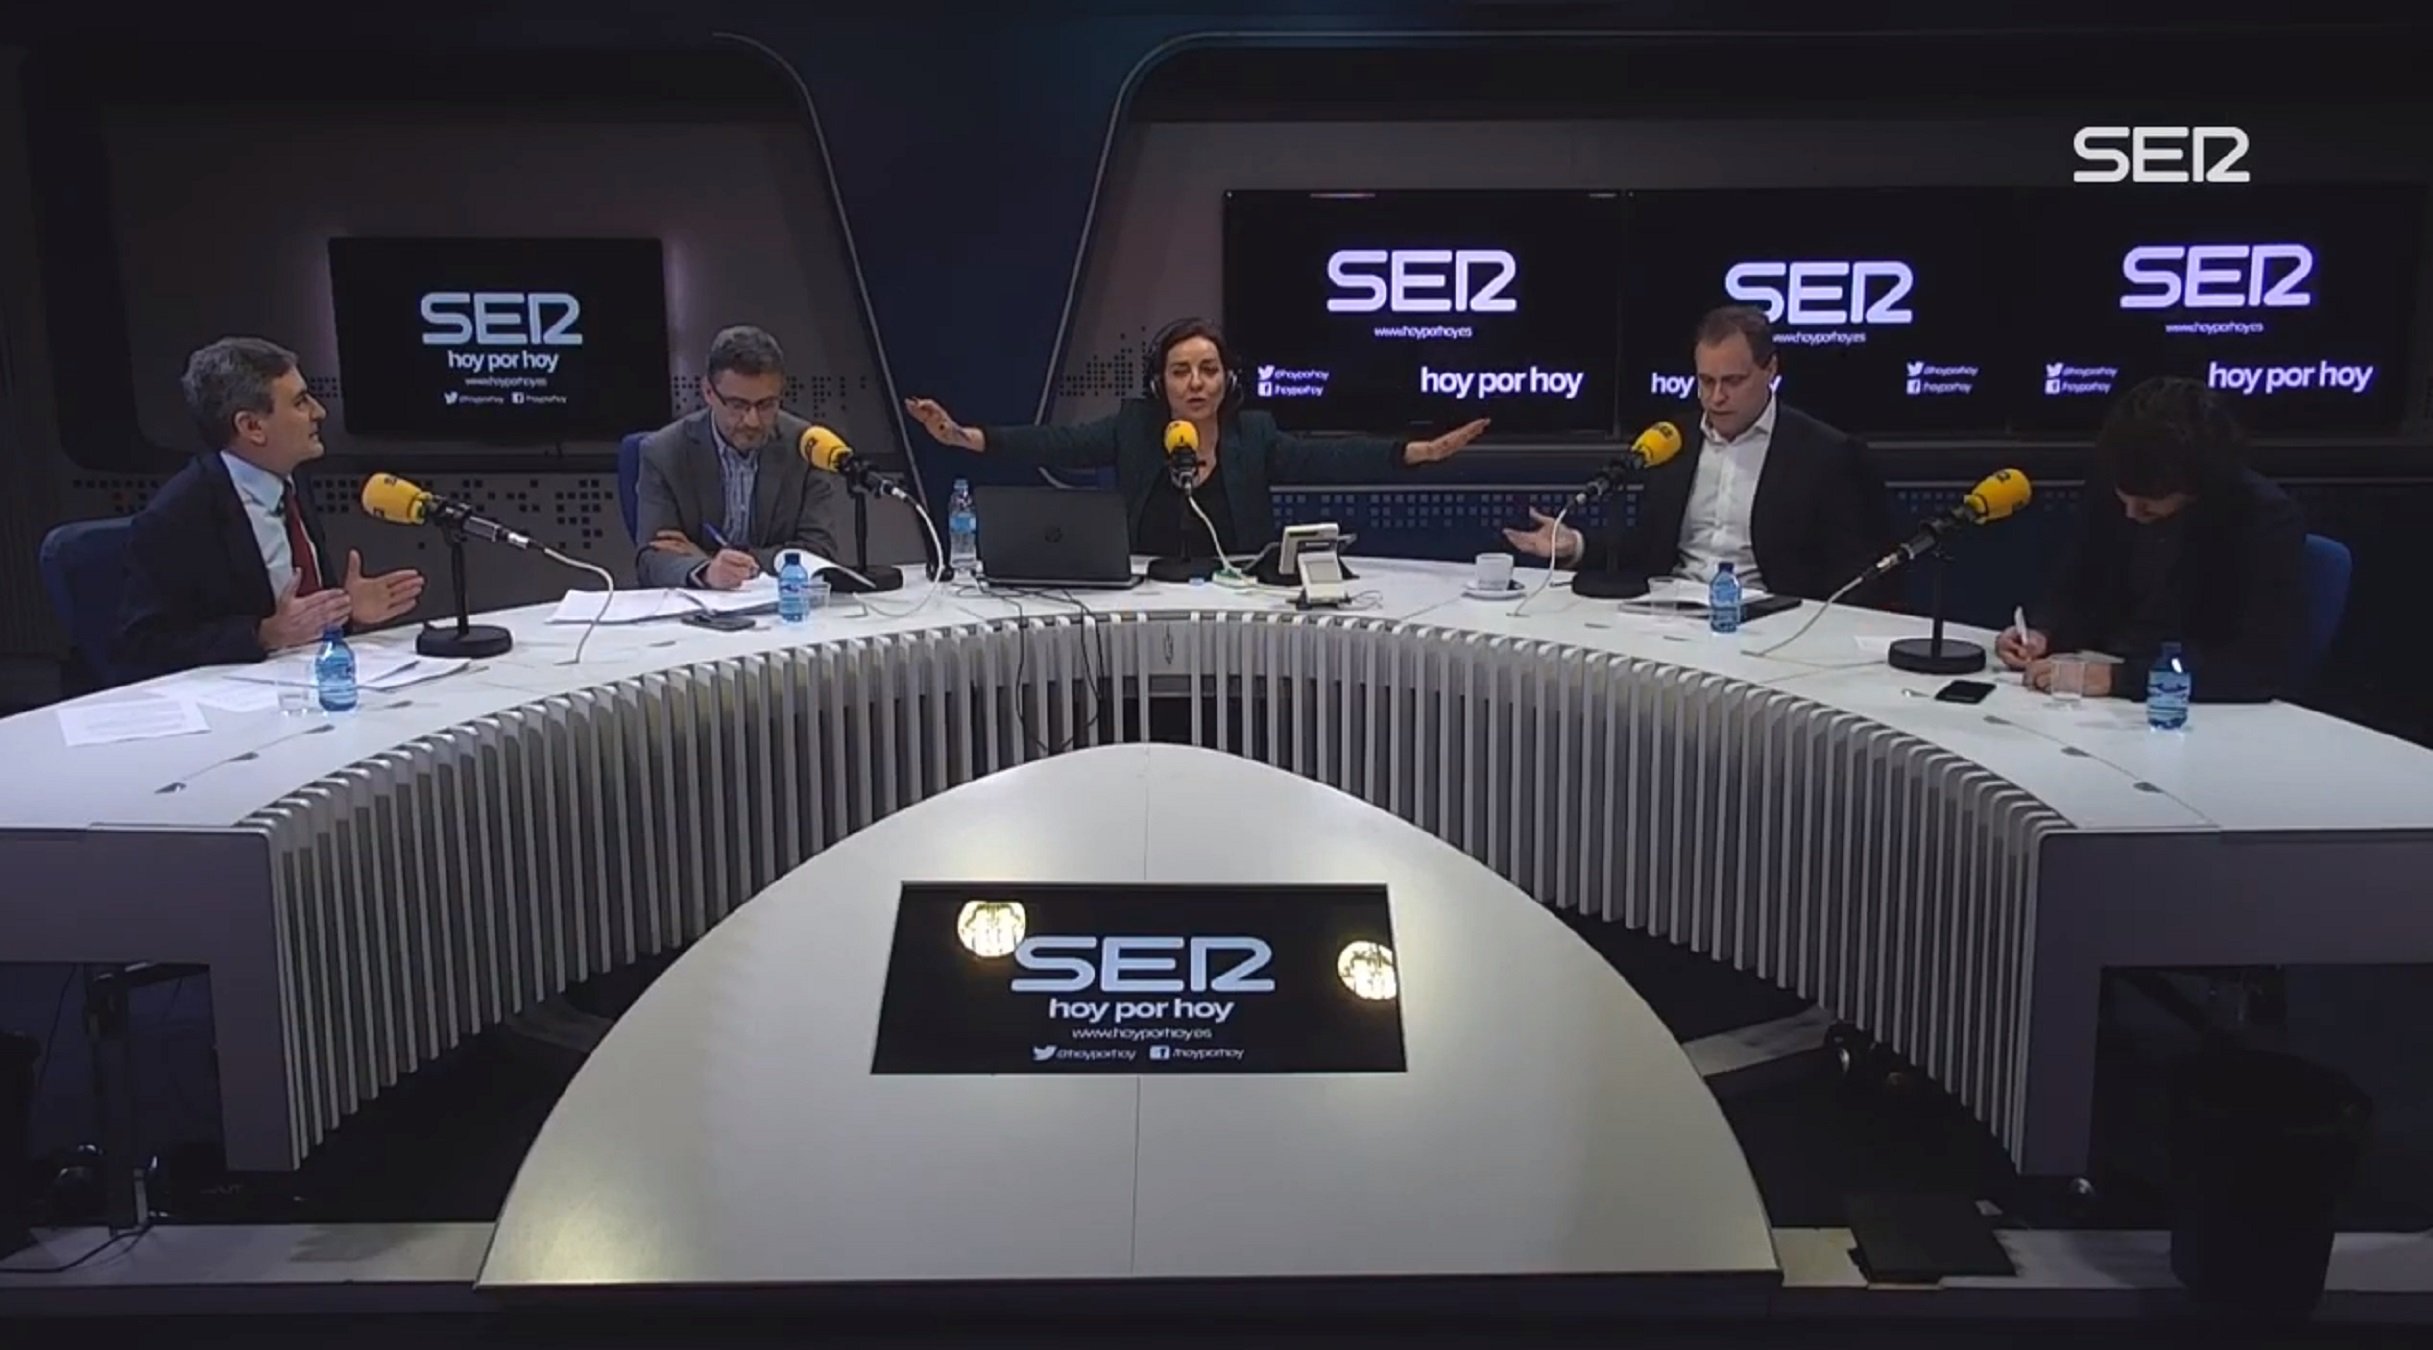 VÍDEO: Bochornoso debate político en la SER, con Pepa Bueno airada: "Cortad micros!"